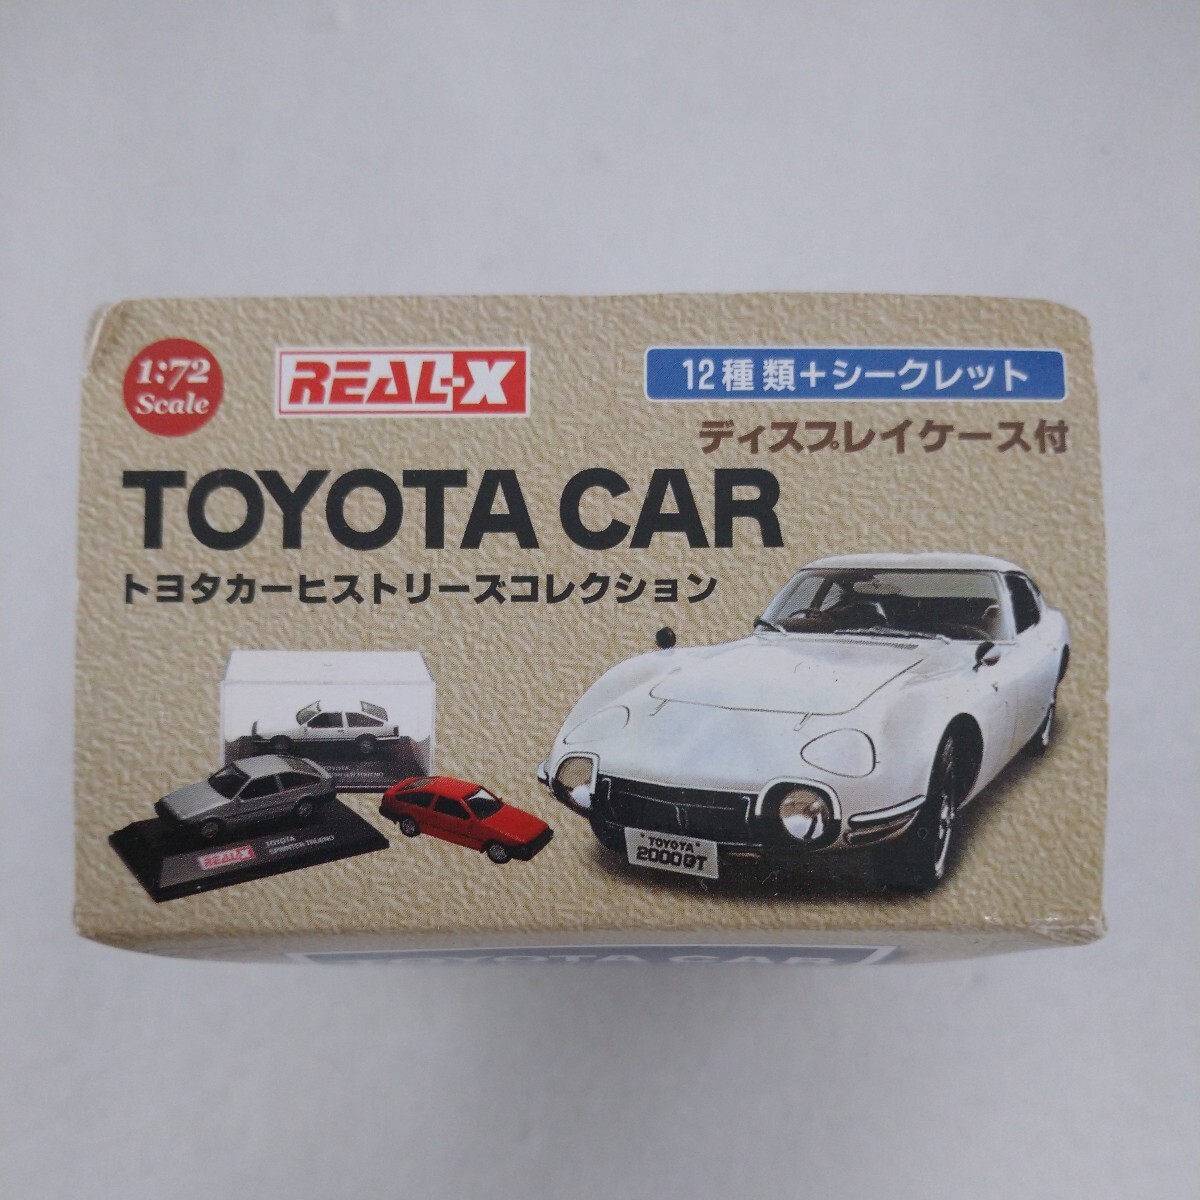 [ нераспечатанный ] Toyota машина hi -тактный Lee z коллекция REAL-X 1/72 миникар модель 